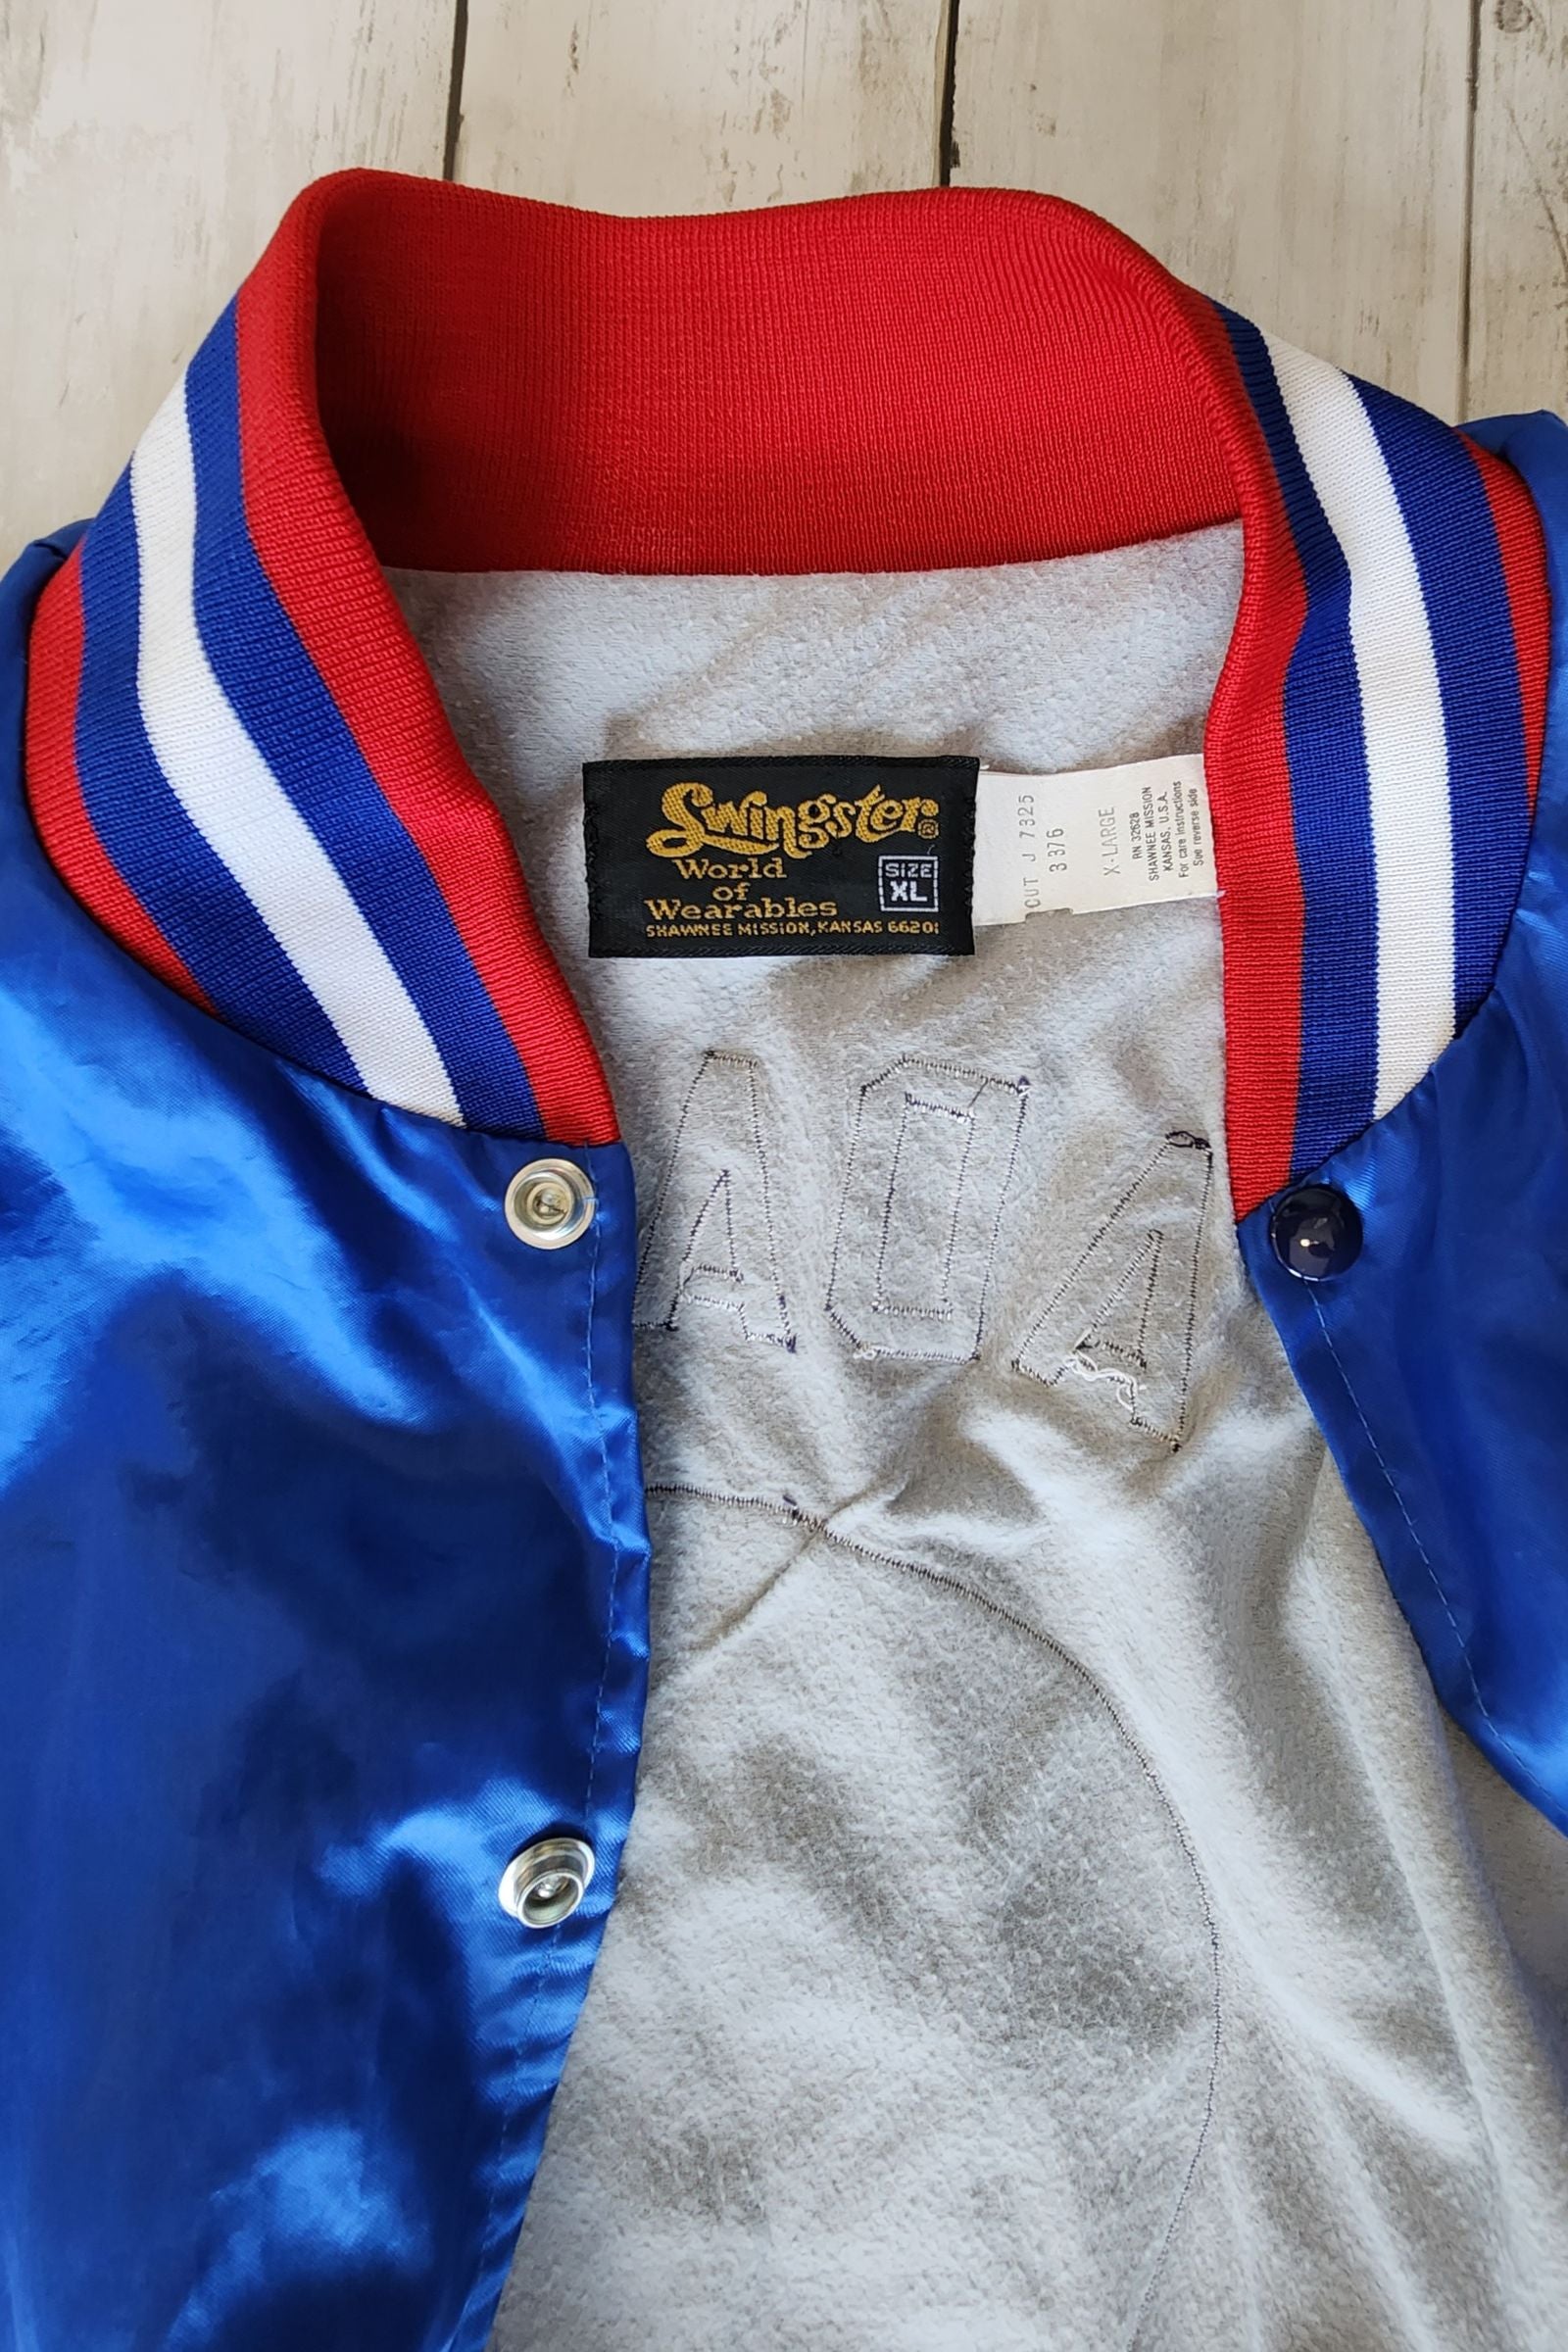 Vintage ADAMS Baseball Jacket